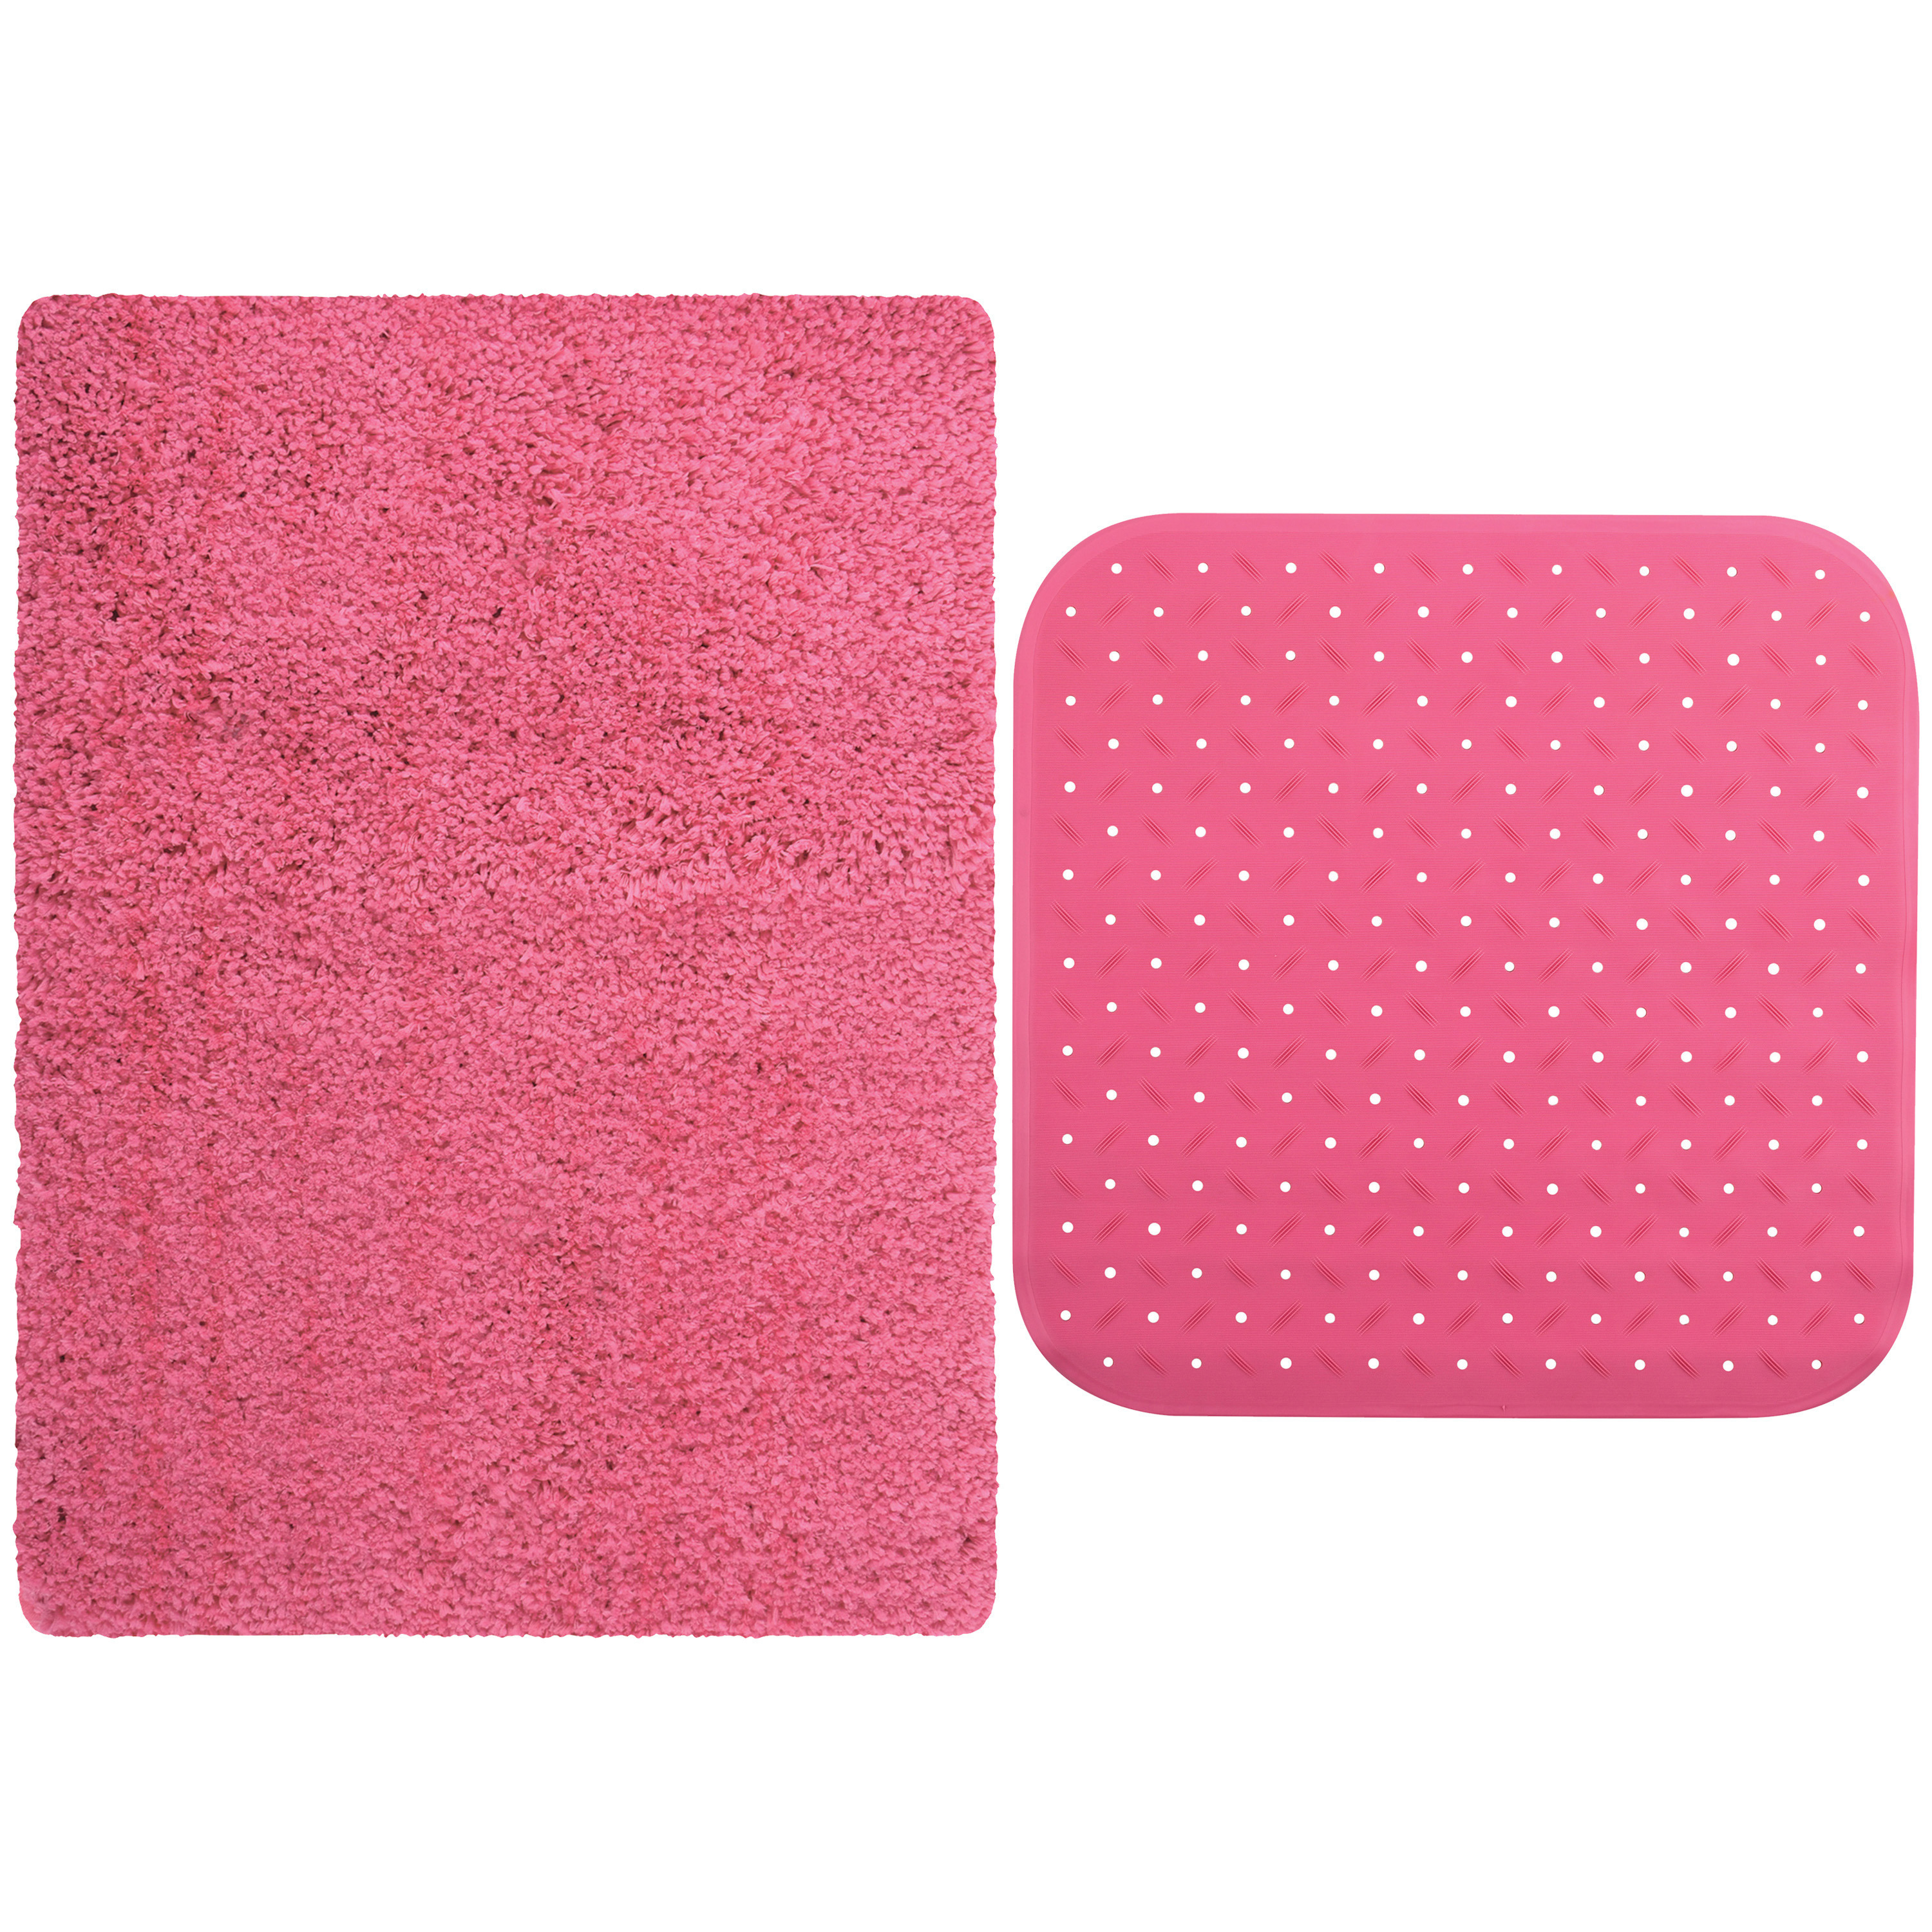 MSV Douche anti-slip mat en droogloop mat Venice badkamer set rubber-microvezel fuchsia roze